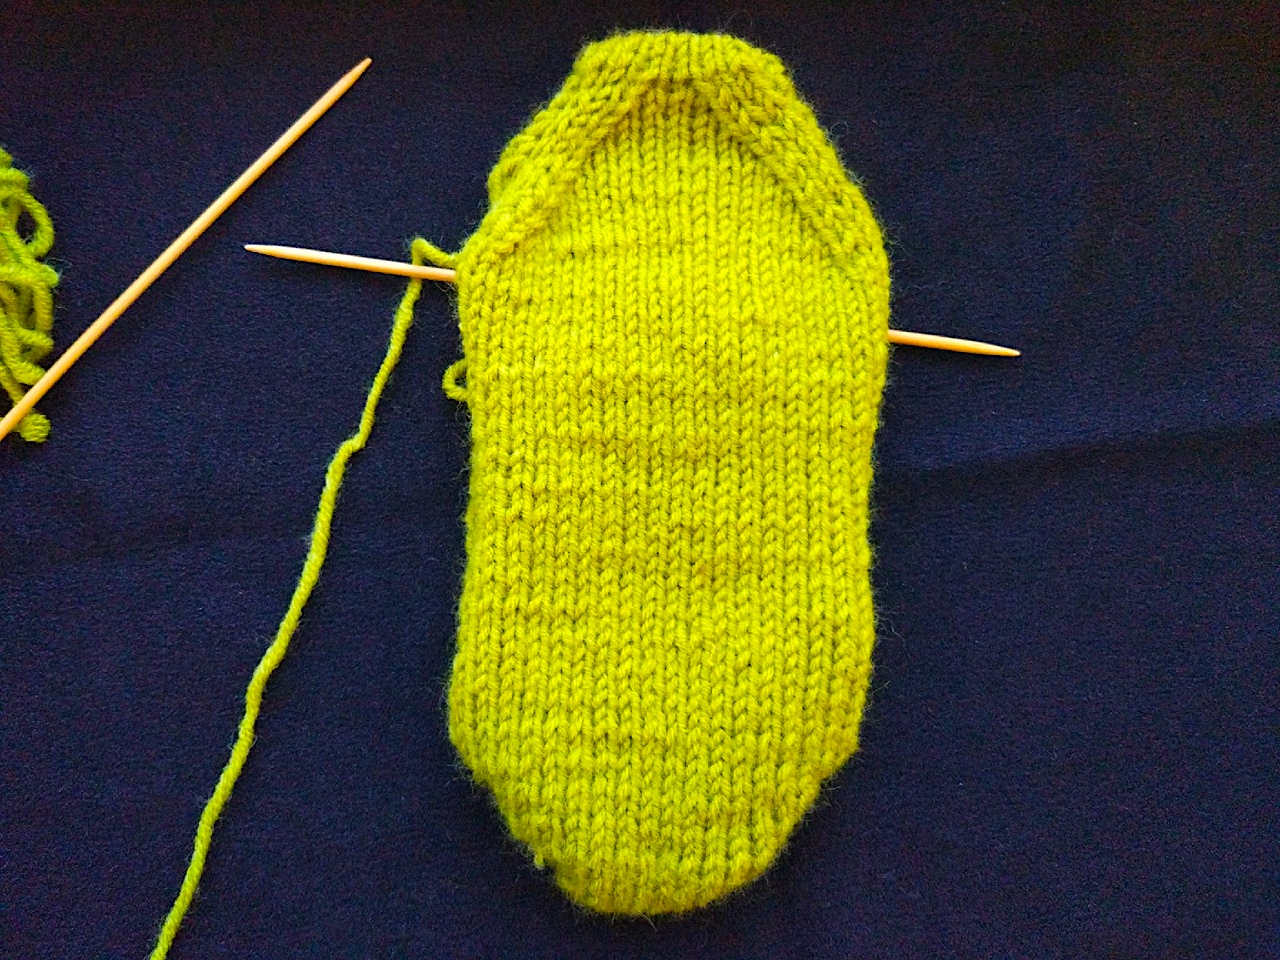 Вяжем крючком взрослые и детские носки. как связать крючком носочки для новорожденных? инструкция, как связать носочки для новорожденных спицами